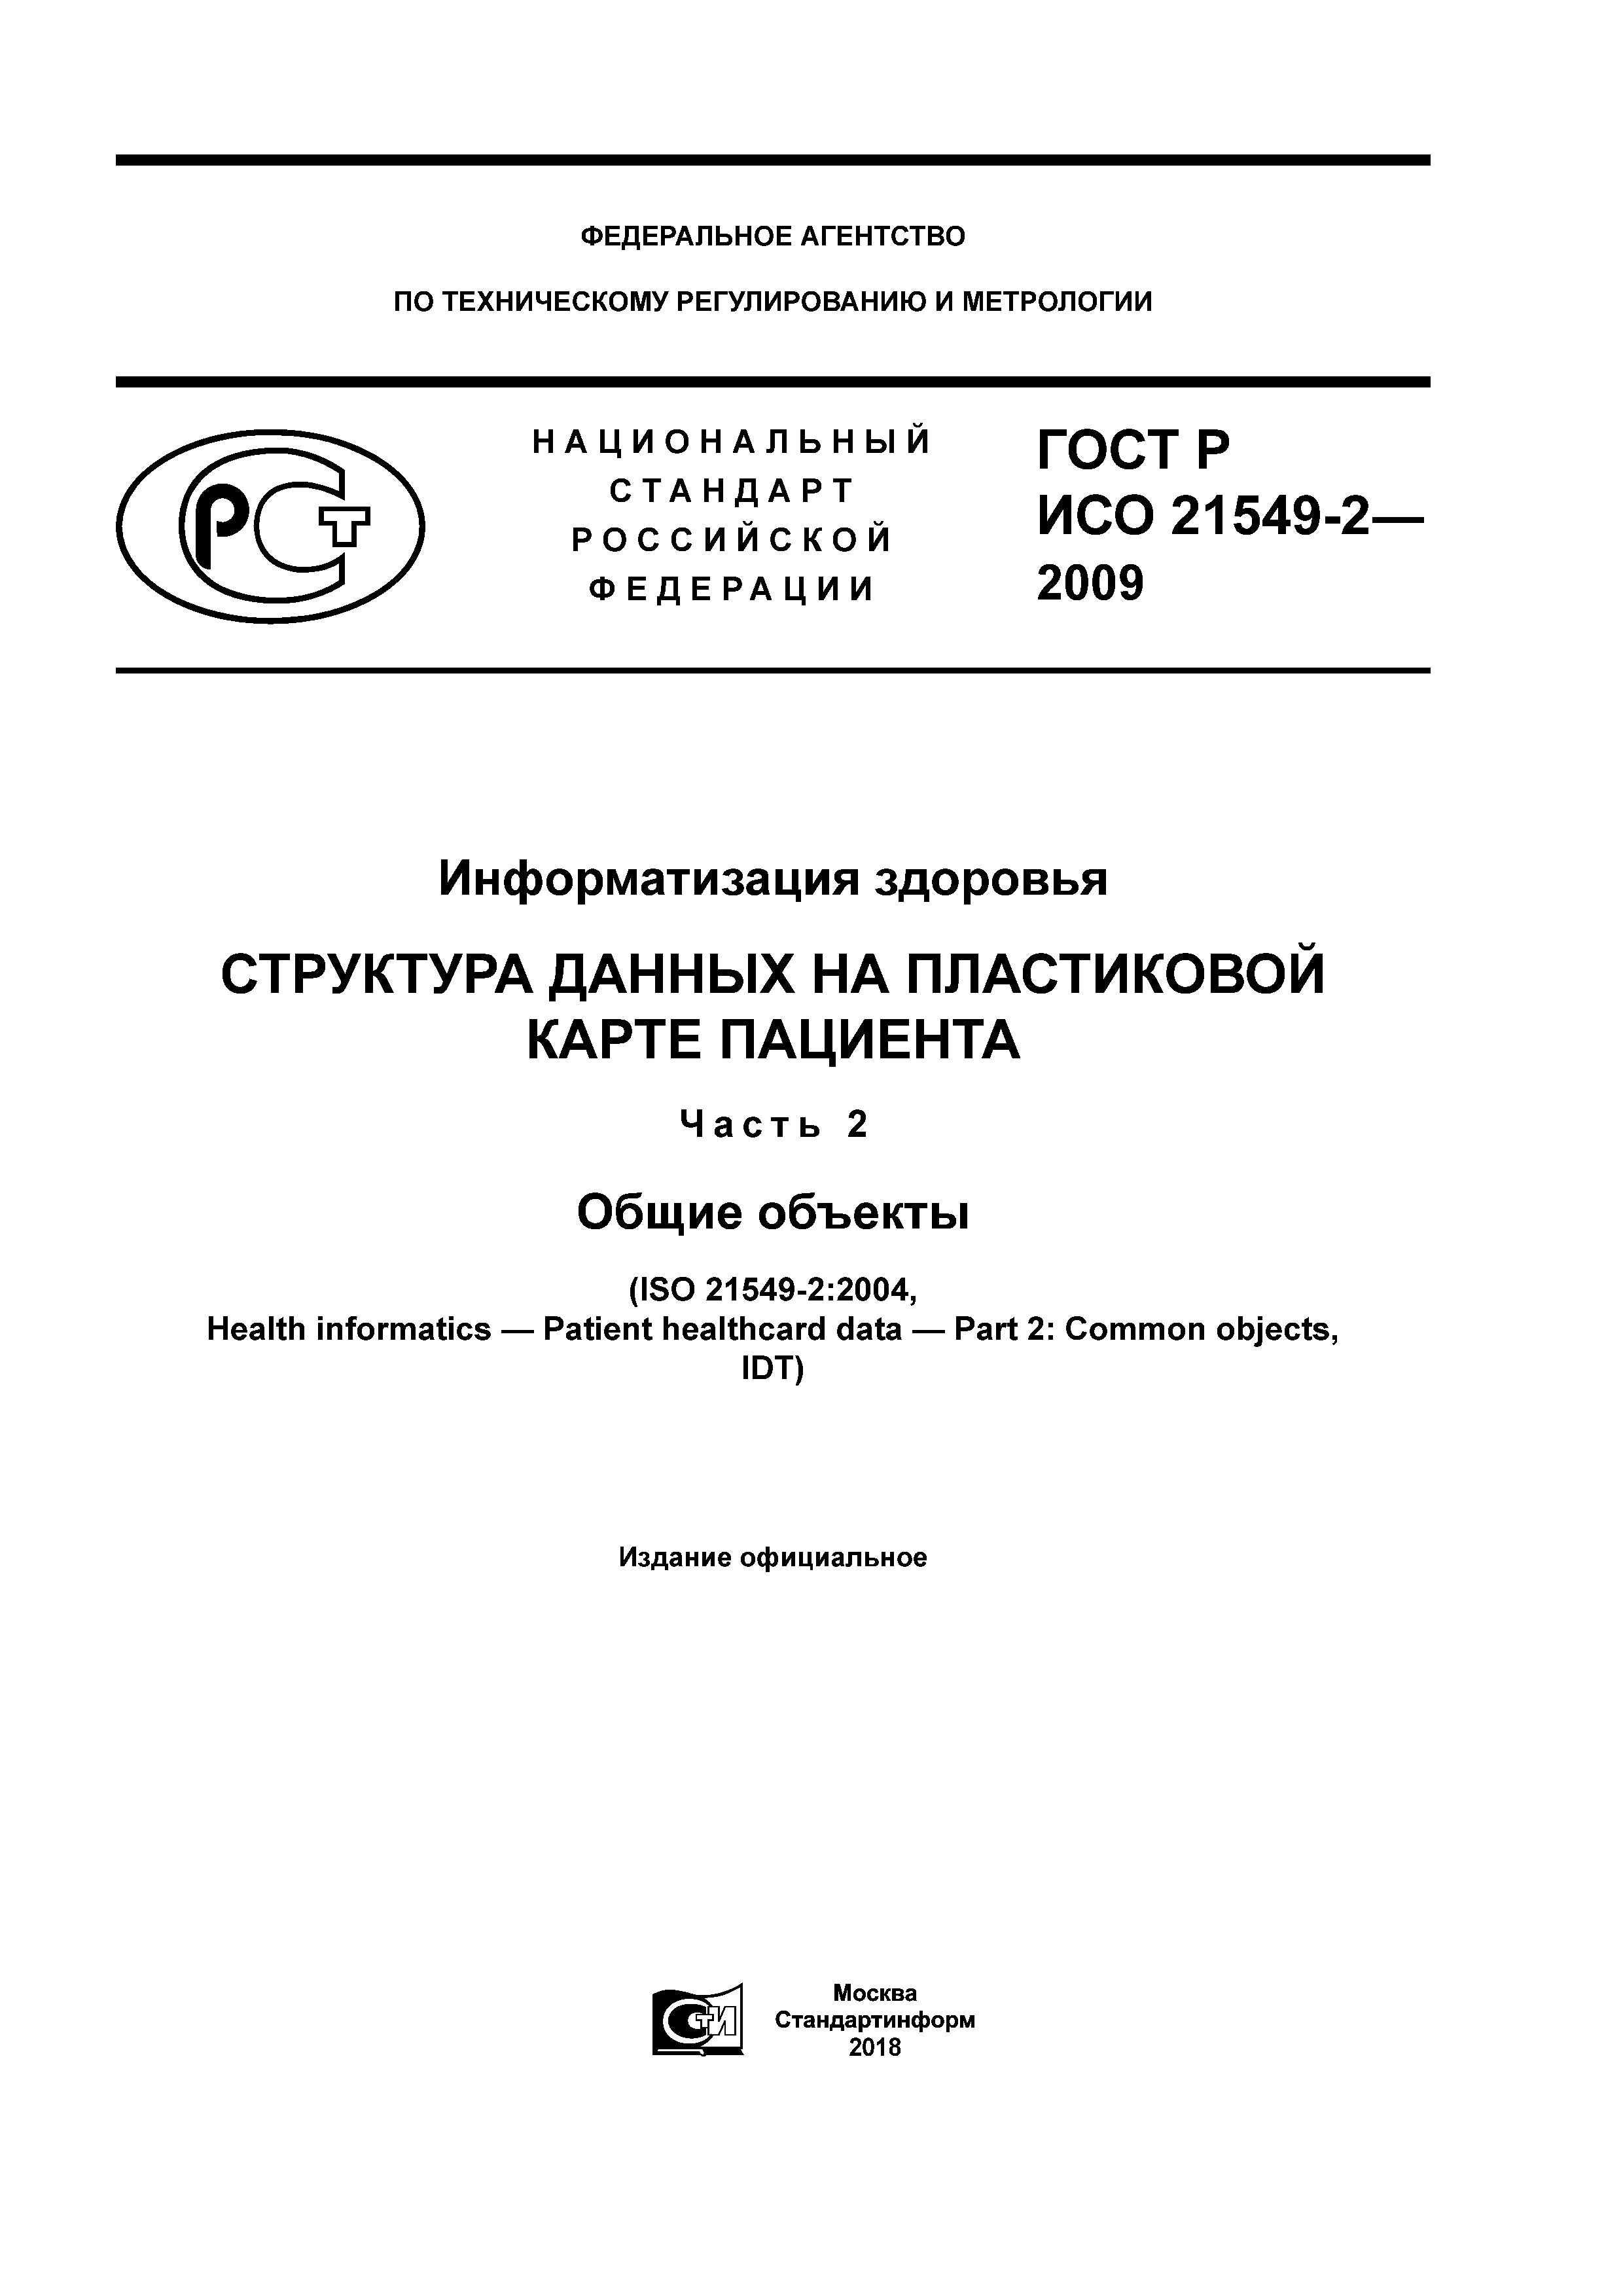 ГОСТ Р ИСО 21549-2-2009